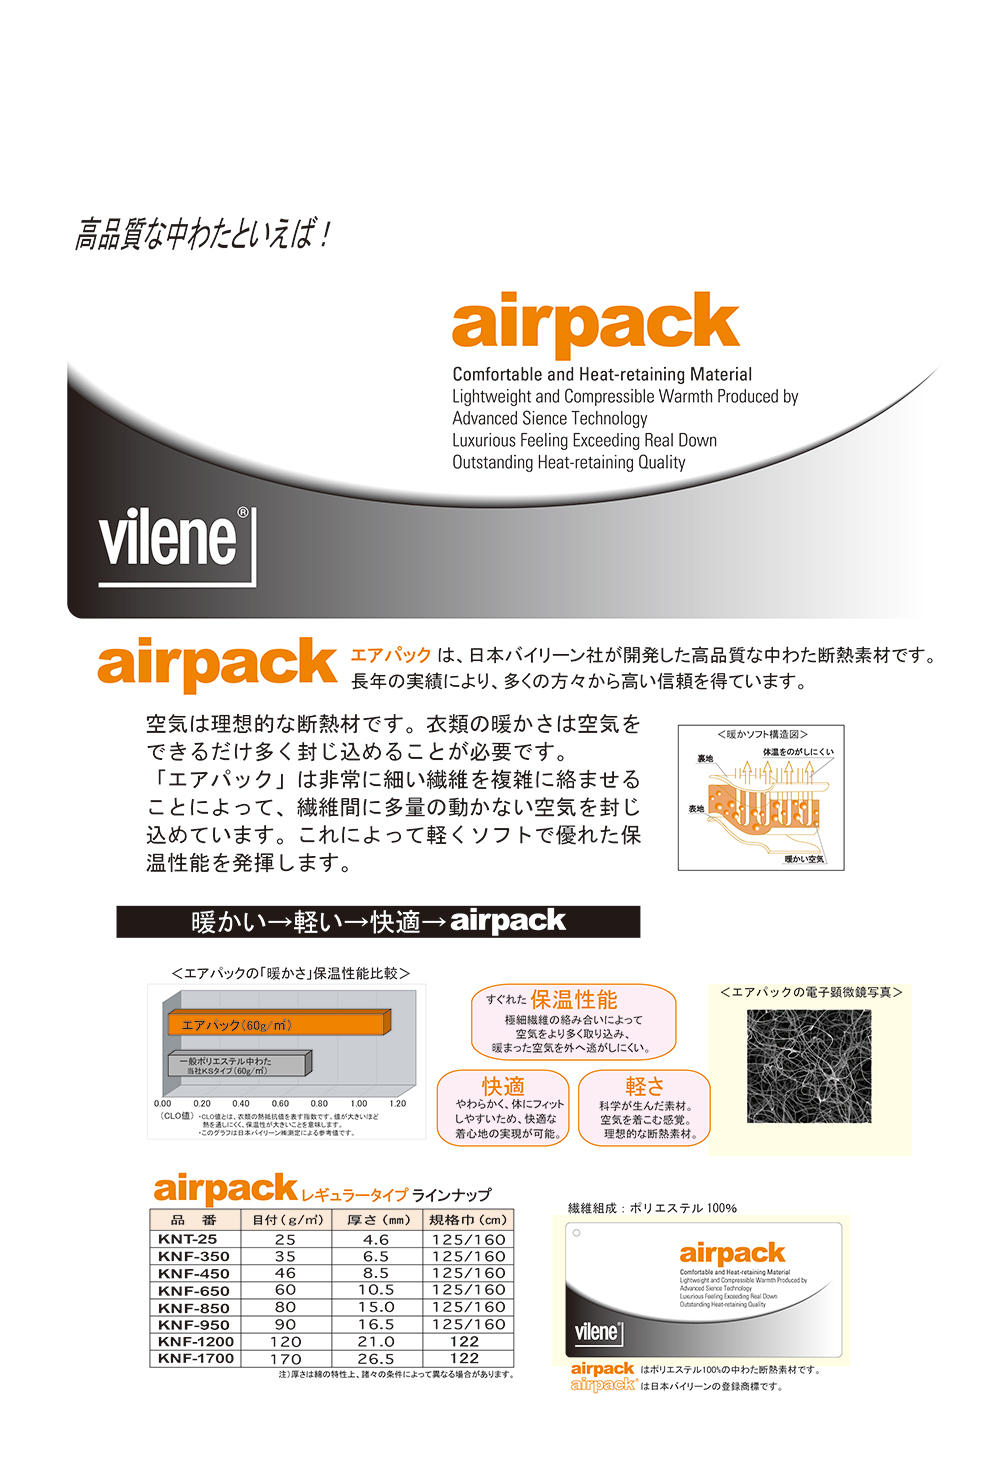 KNF1700 Quilt Batting Air Pack 170g[Einlage] Vilene (JAPAN Vilene)